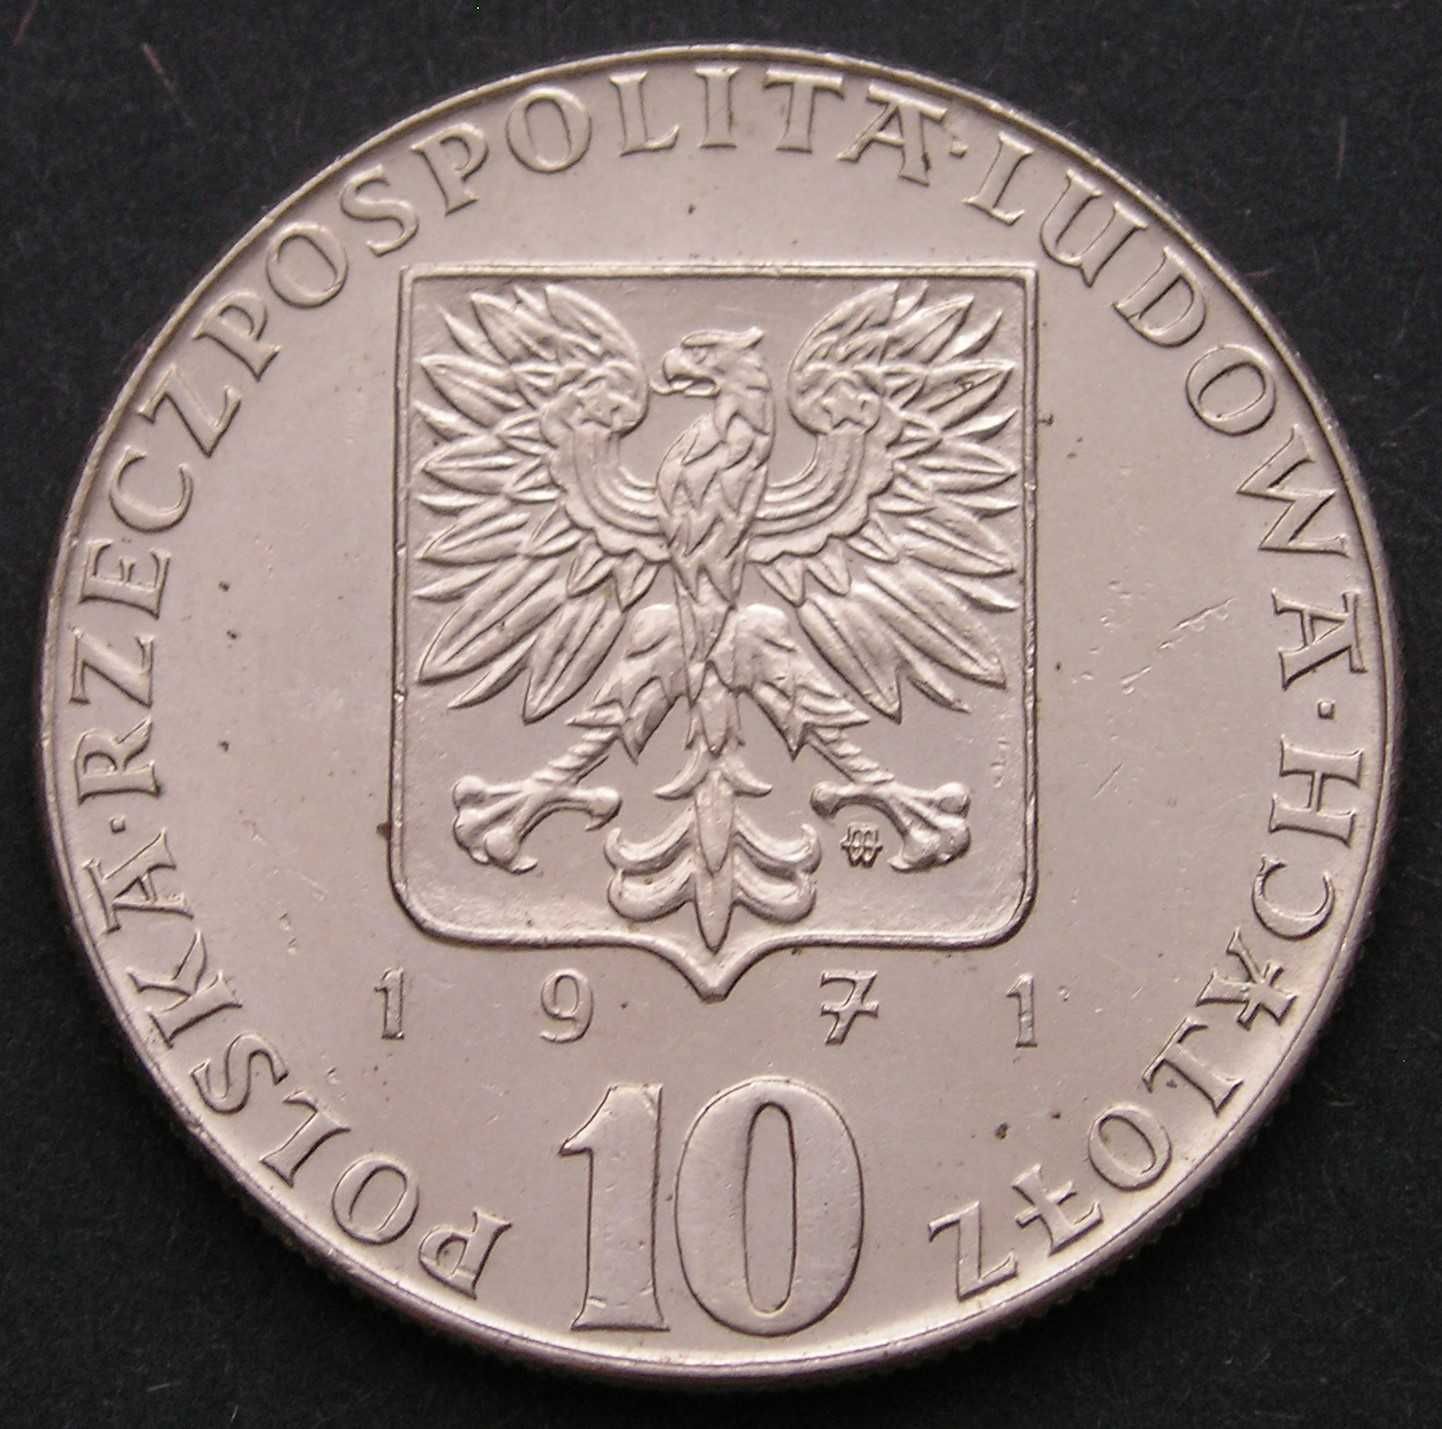 Polska 10 złotych 1971 - FAO - FIAT PANIS - flądra